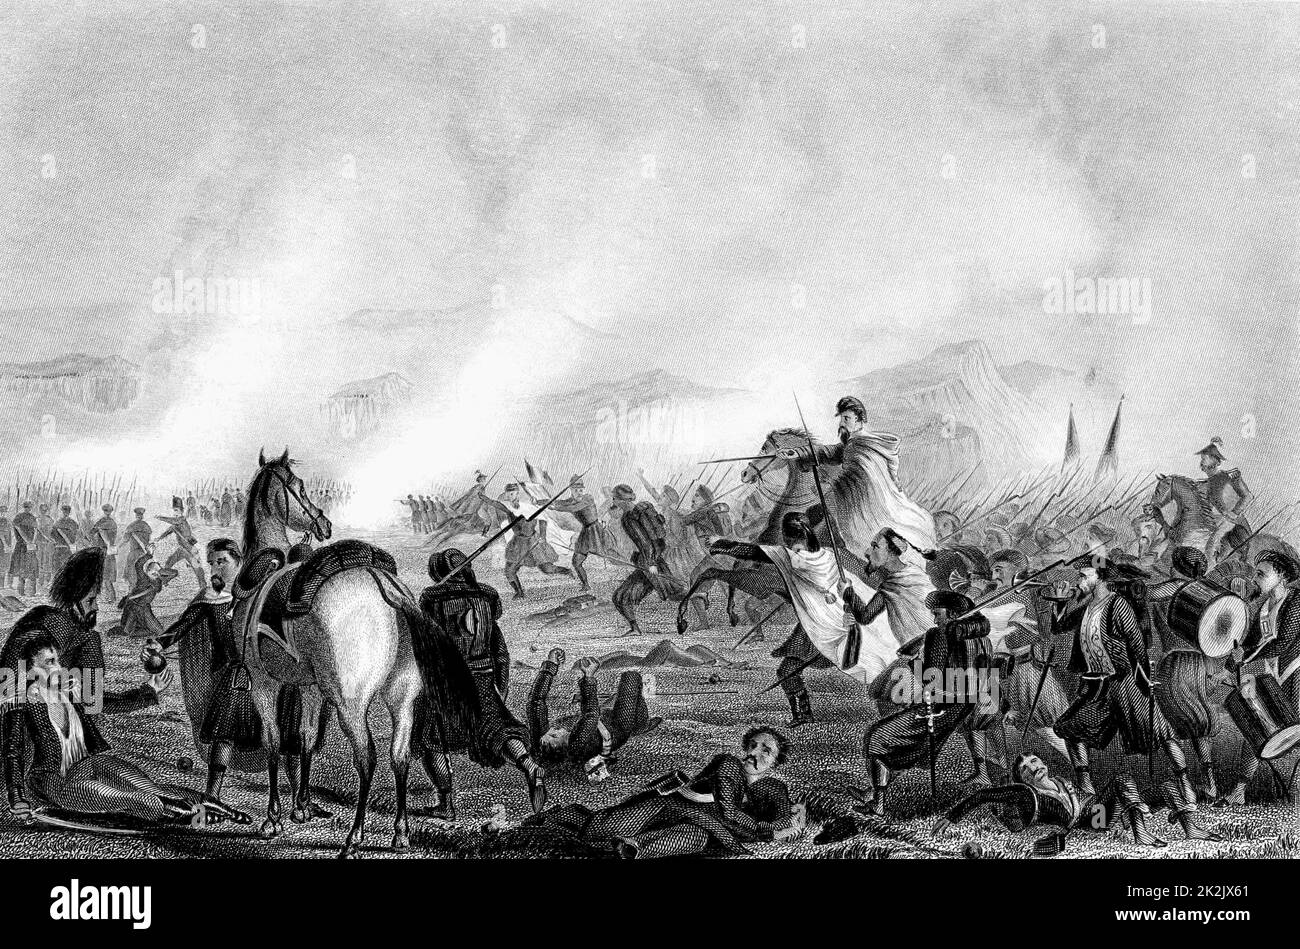 Krimkrieg (1853-1856) Zouaves, französische Infanterie algerischer Herkunft, die britischen Truppen zur Hilfe kam und ihnen half, den russischen Angriff auf Inkerman zurückzuschlagen 5. November 1854. Gravur c1856 Stockfoto